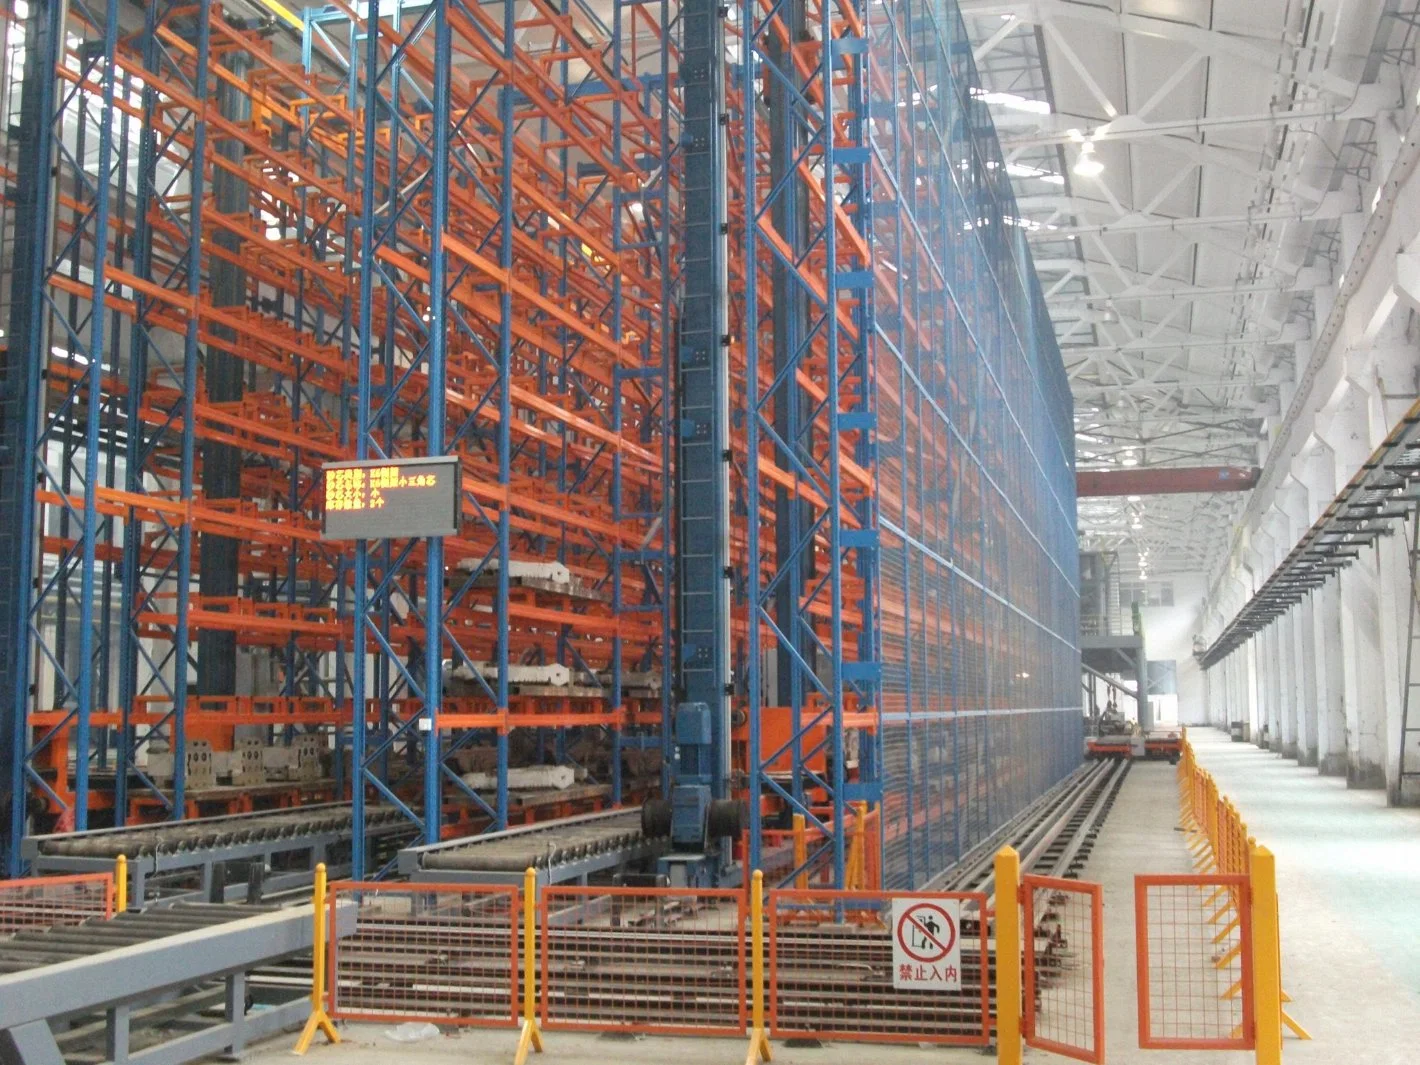 Smart Pallet Rack Radio Shuttle Car Industrial Racking Racks and Shelves for Warehouse Storage for Intelligent Shelf